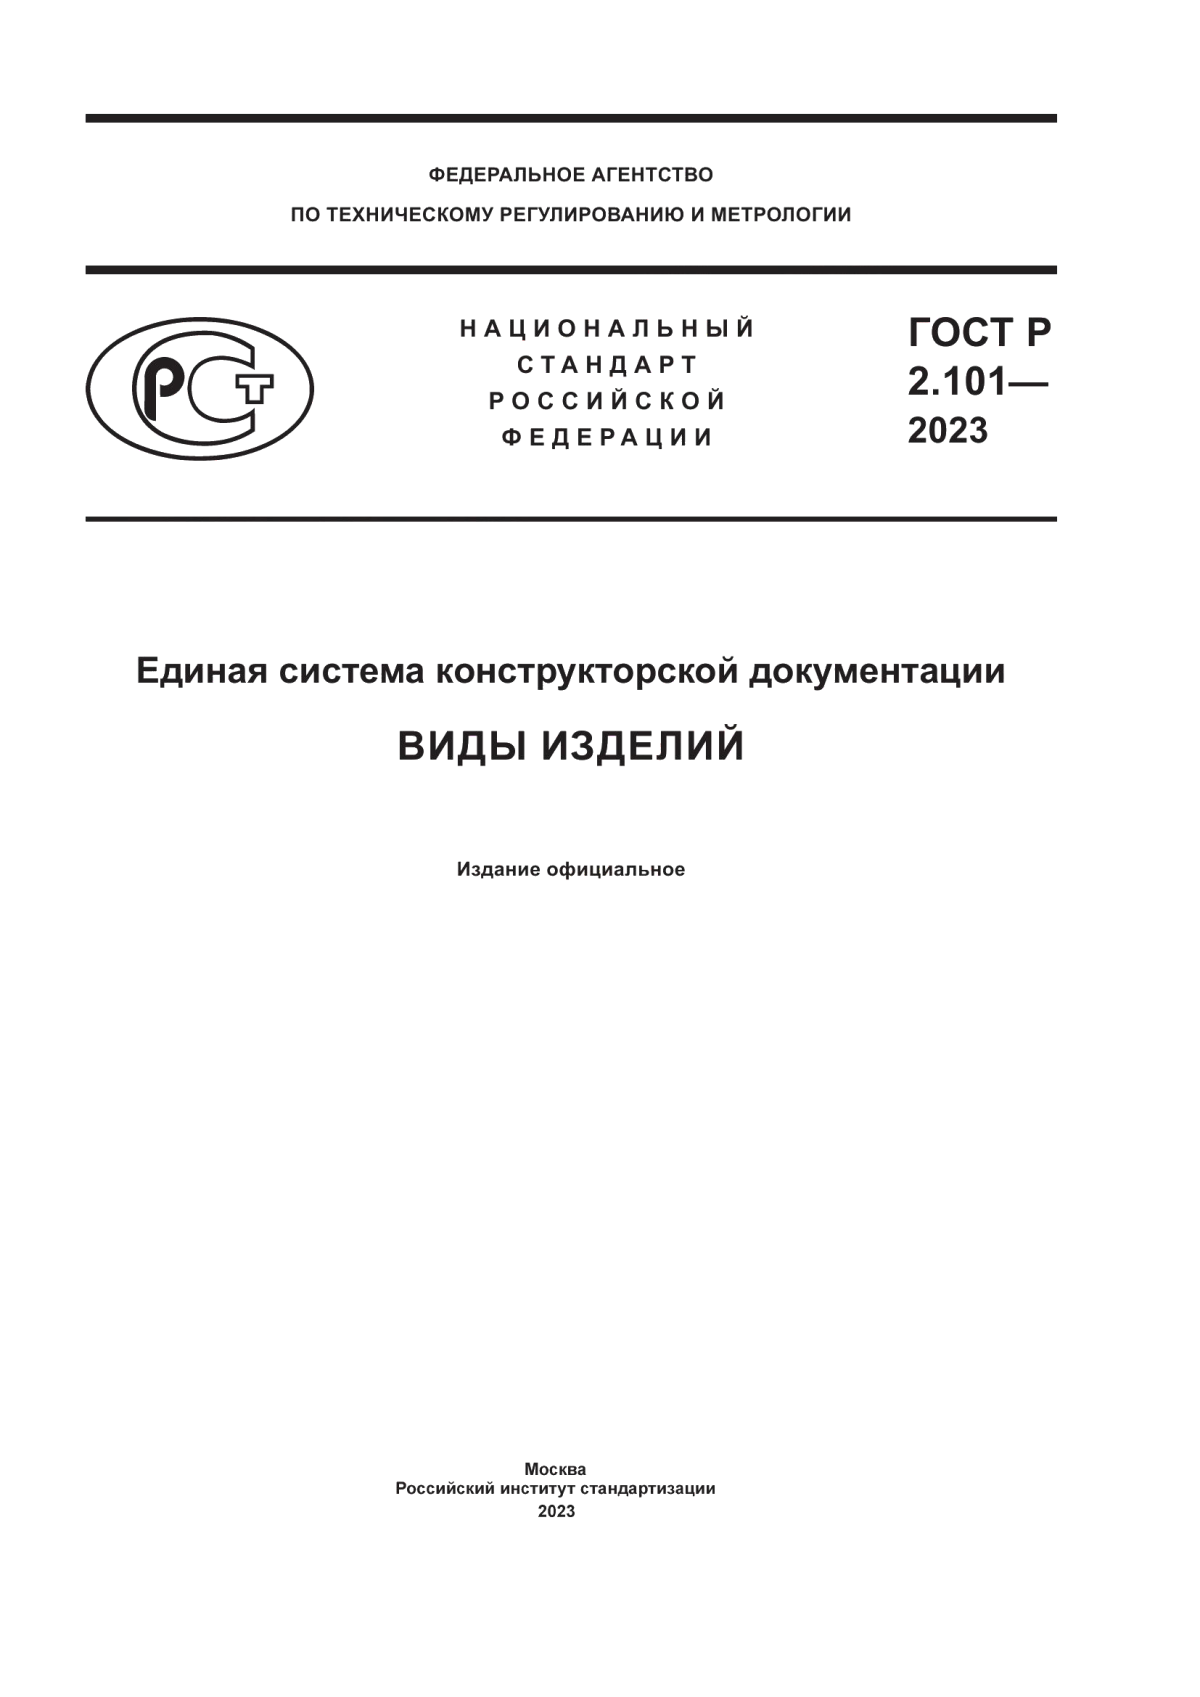 ГОСТ Р 2.101-2023 Единая система конструкторской документации. Виды изделий